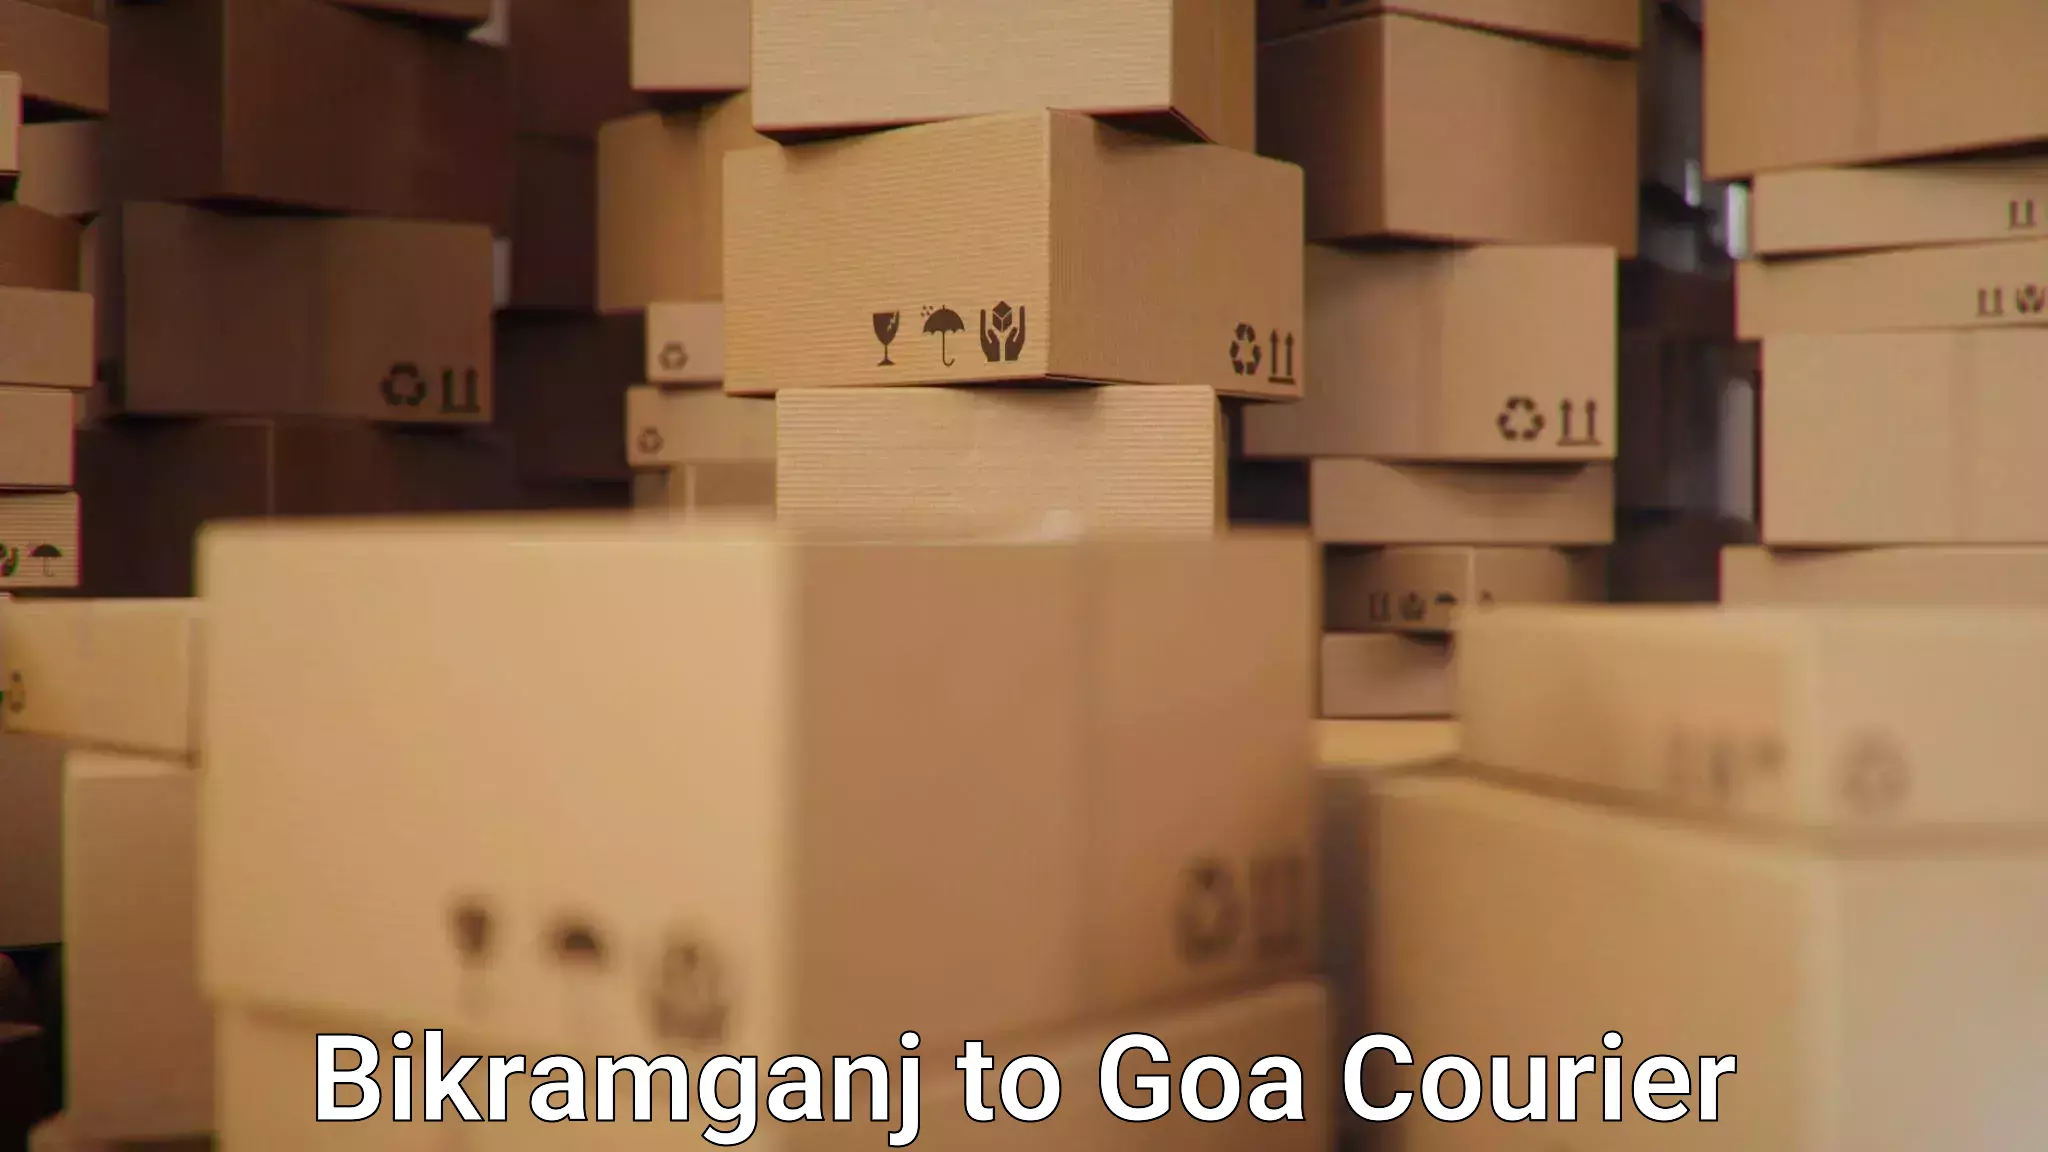 Efficient parcel service Bikramganj to Vasco da Gama